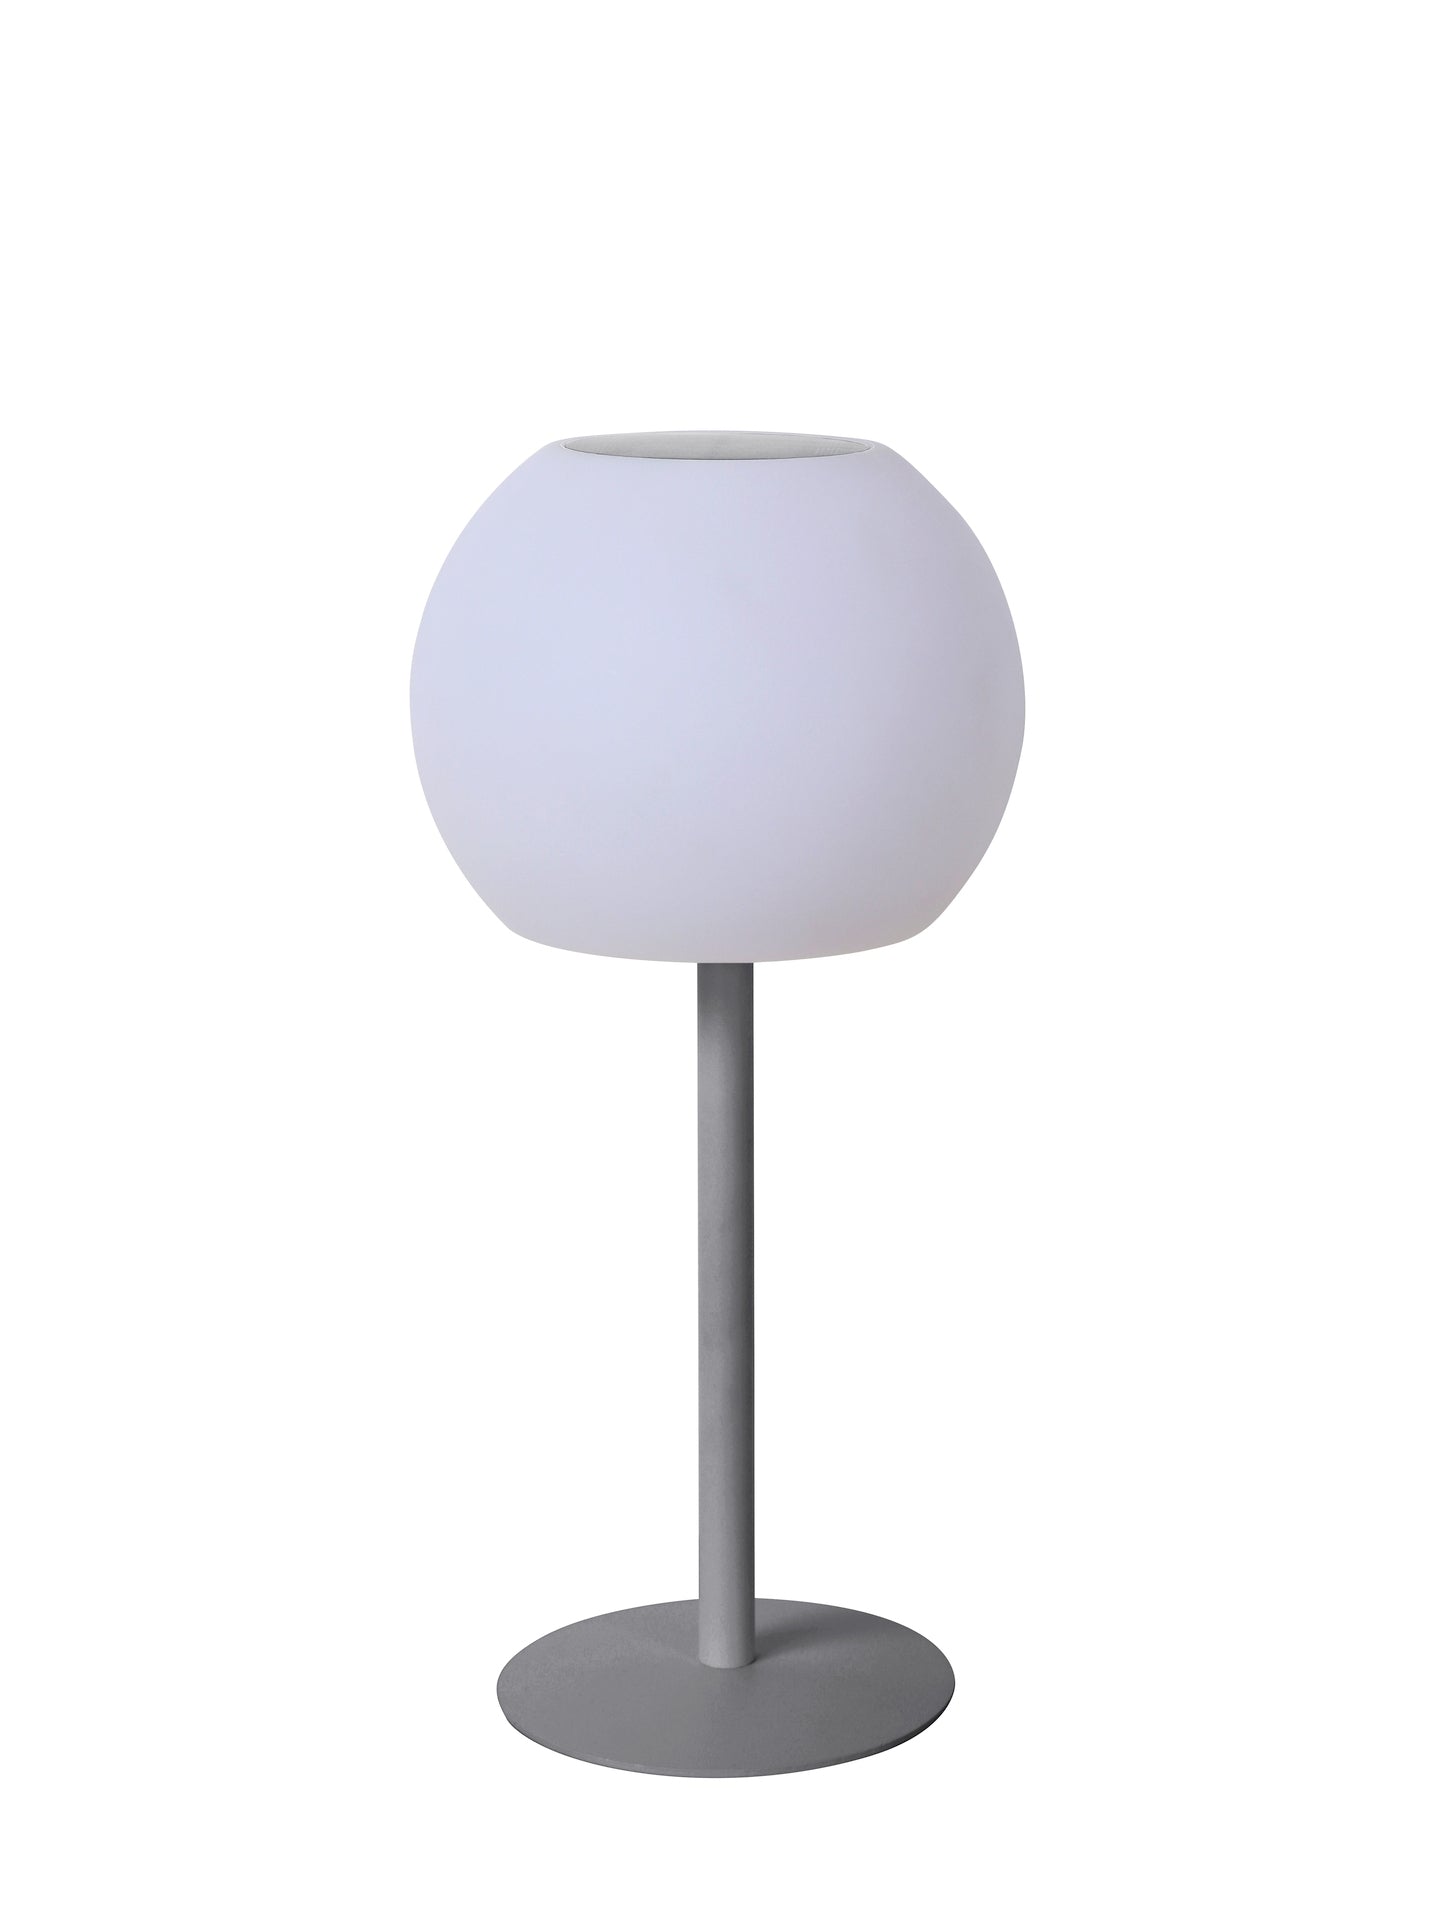 Solar-Tischlampe Shine-40 man mit RGB & White LED-Leuchtmitteln, Dimm- und Farbwechselfunktion - Gartenmöbelshop.at